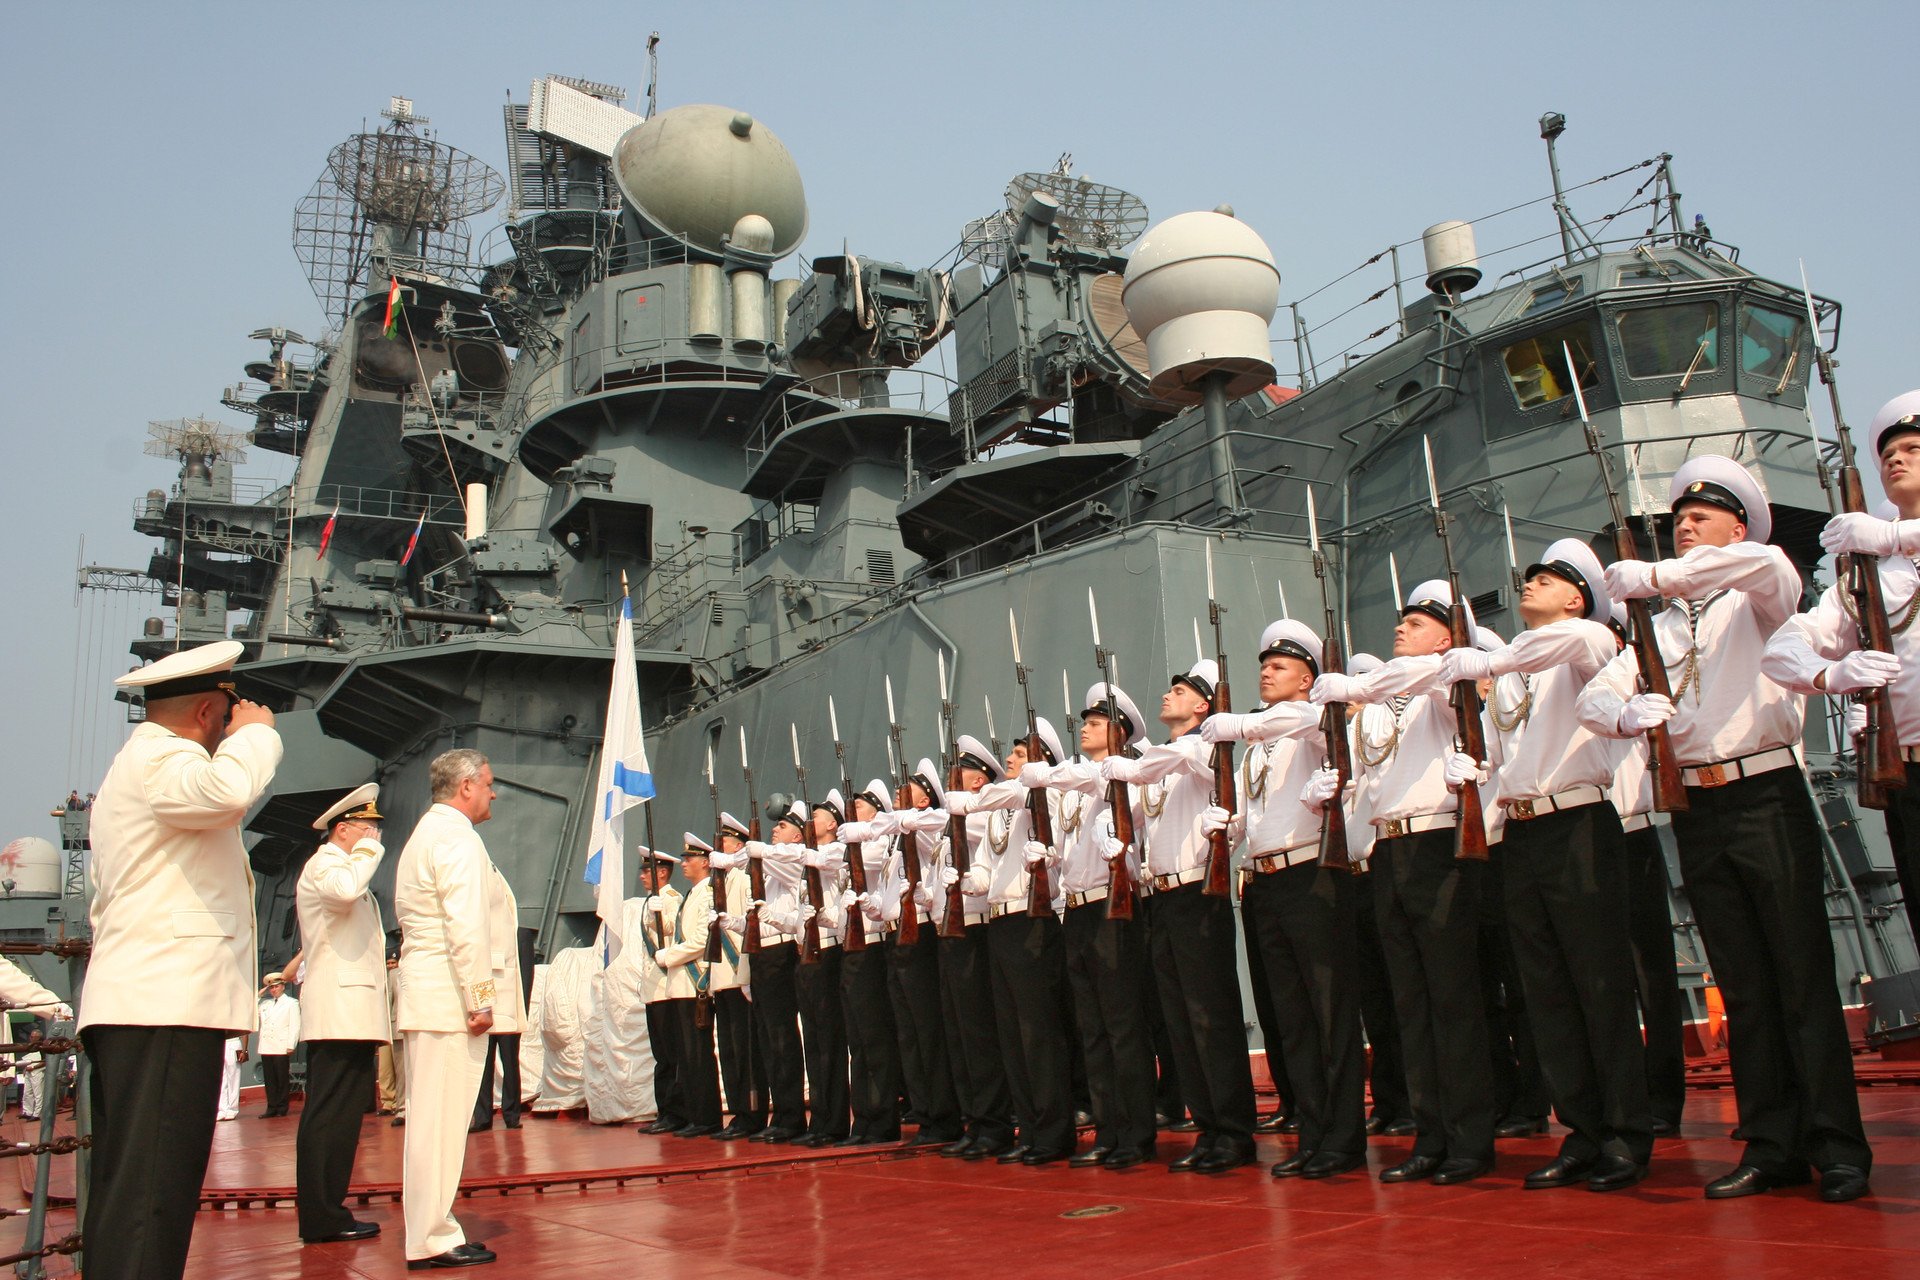 Скопище военных кораблей. Морские войска.